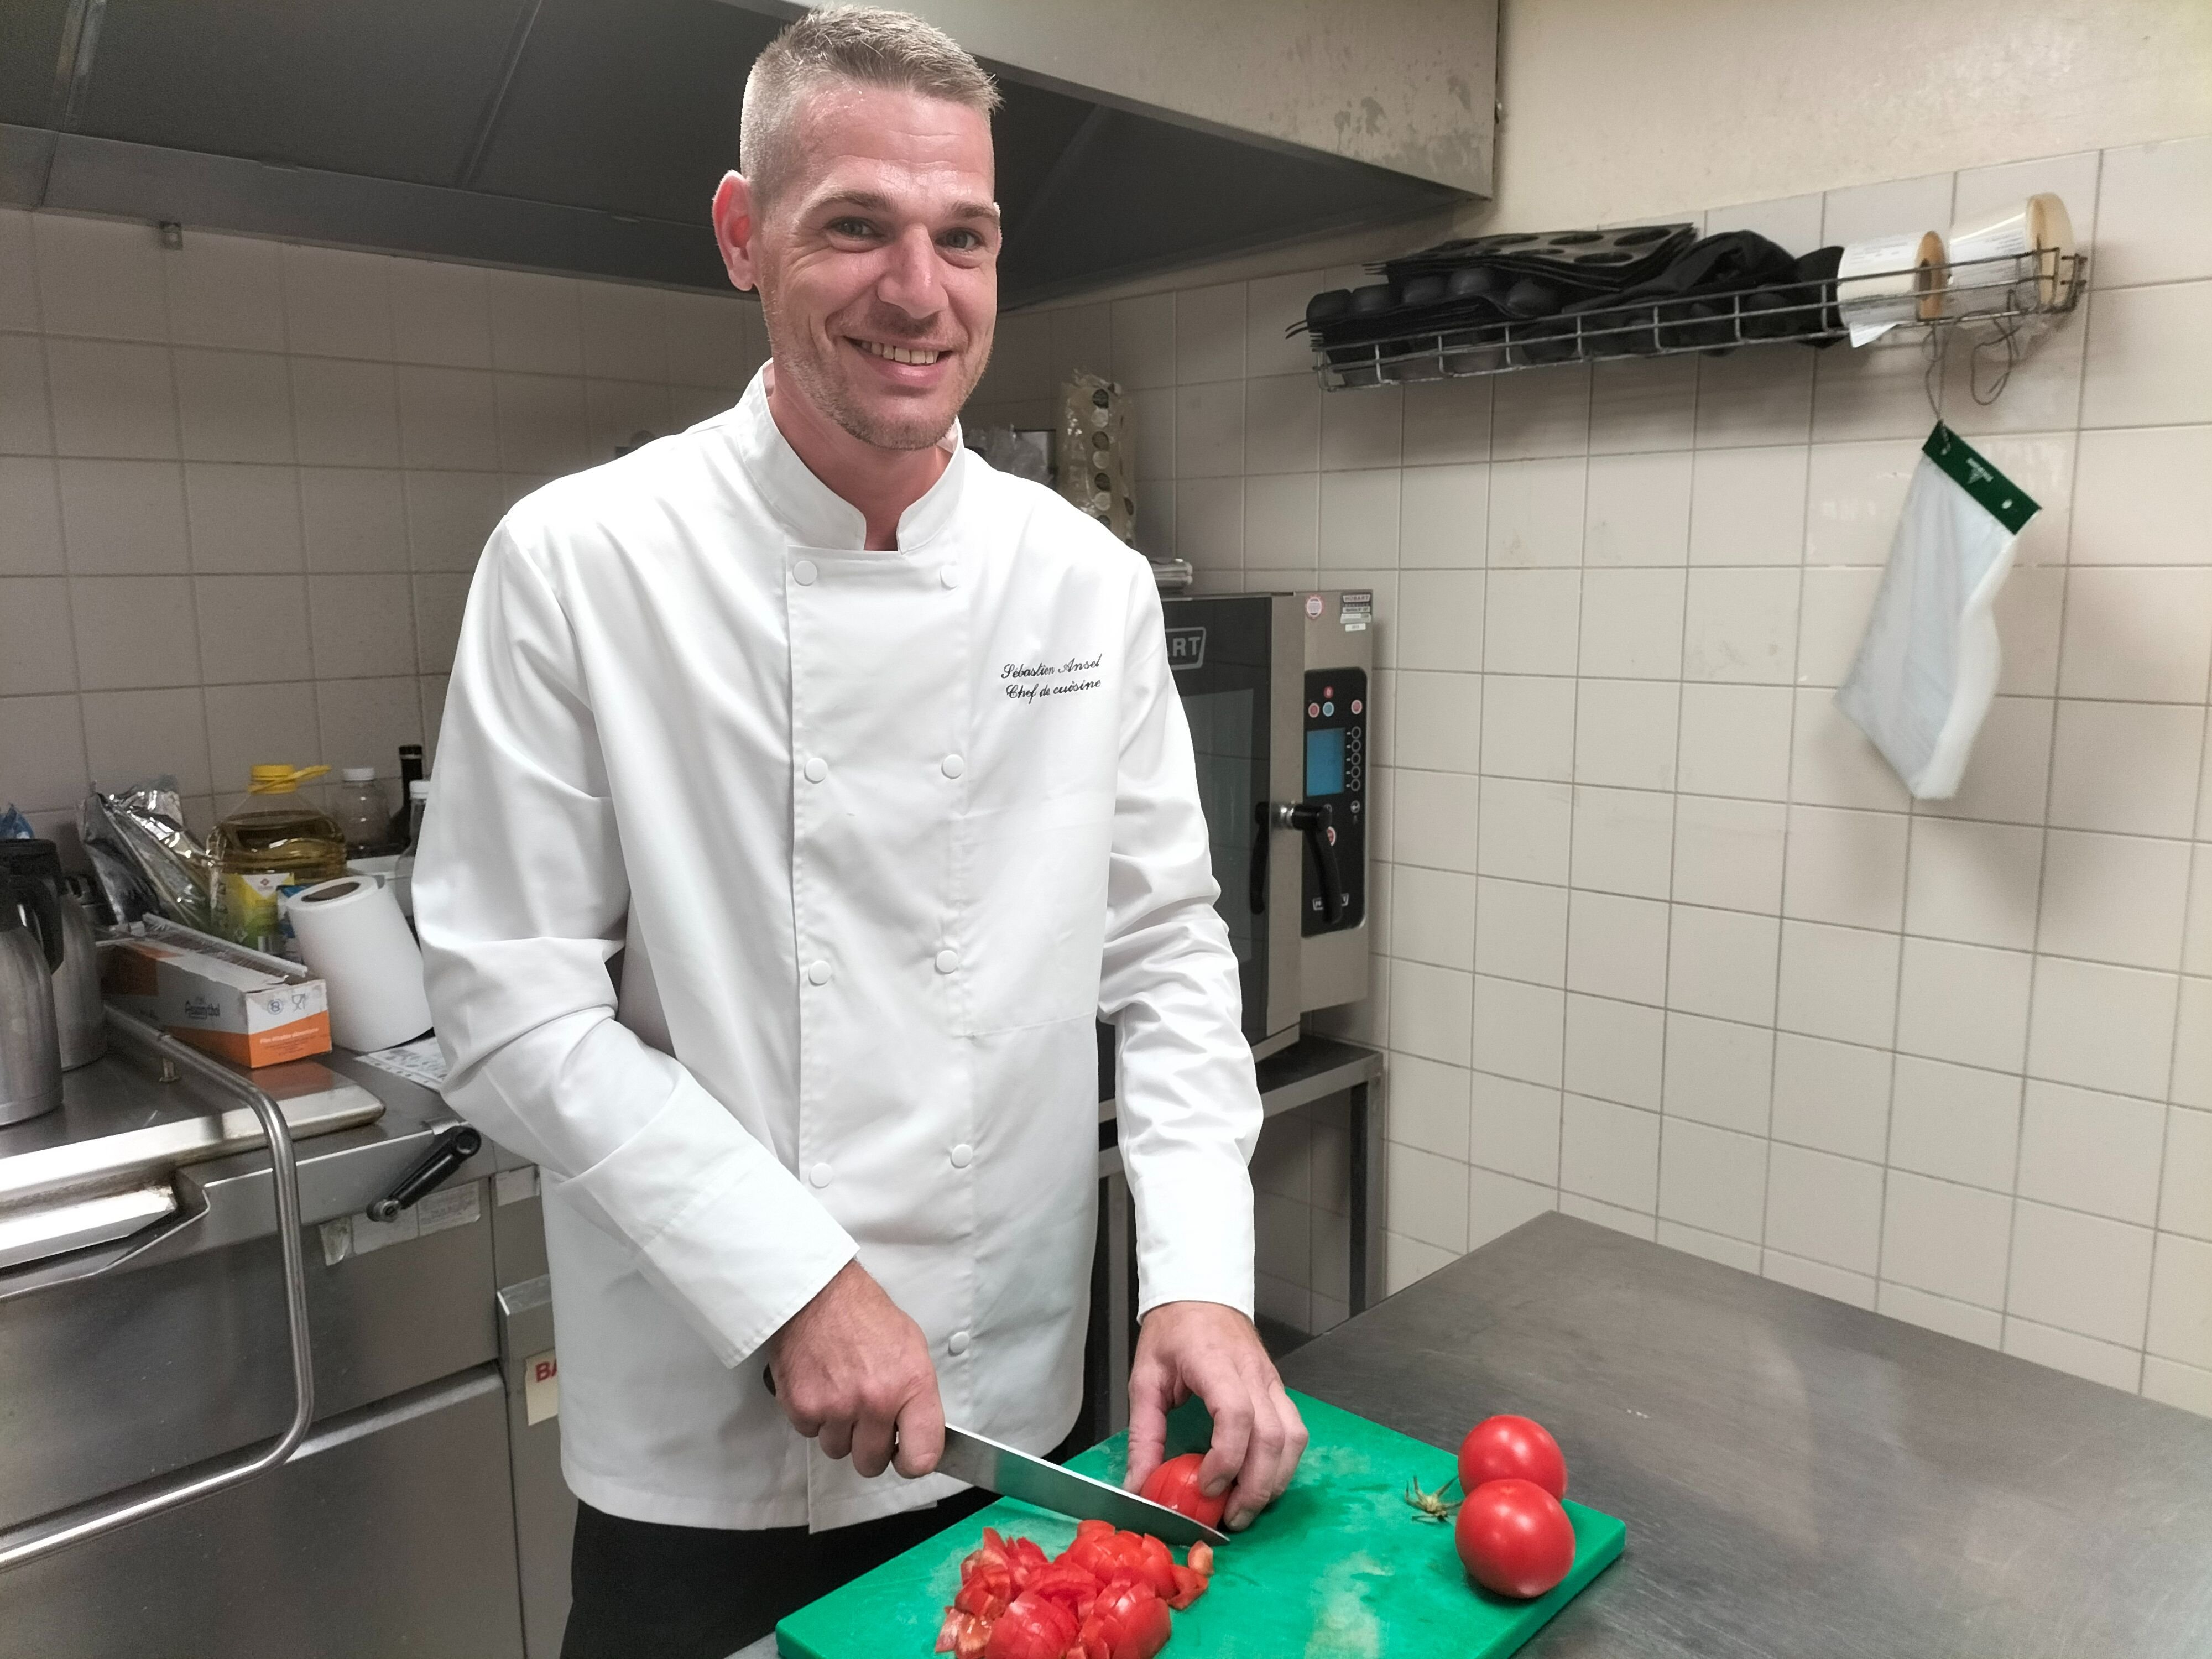 Songeons (Oise), samedi 13 août 2022. Le chef Sébastien Ansel, natif de Beauvais, a fièrement représenté la cuisine du département dans ce concours culinaire télévisé.